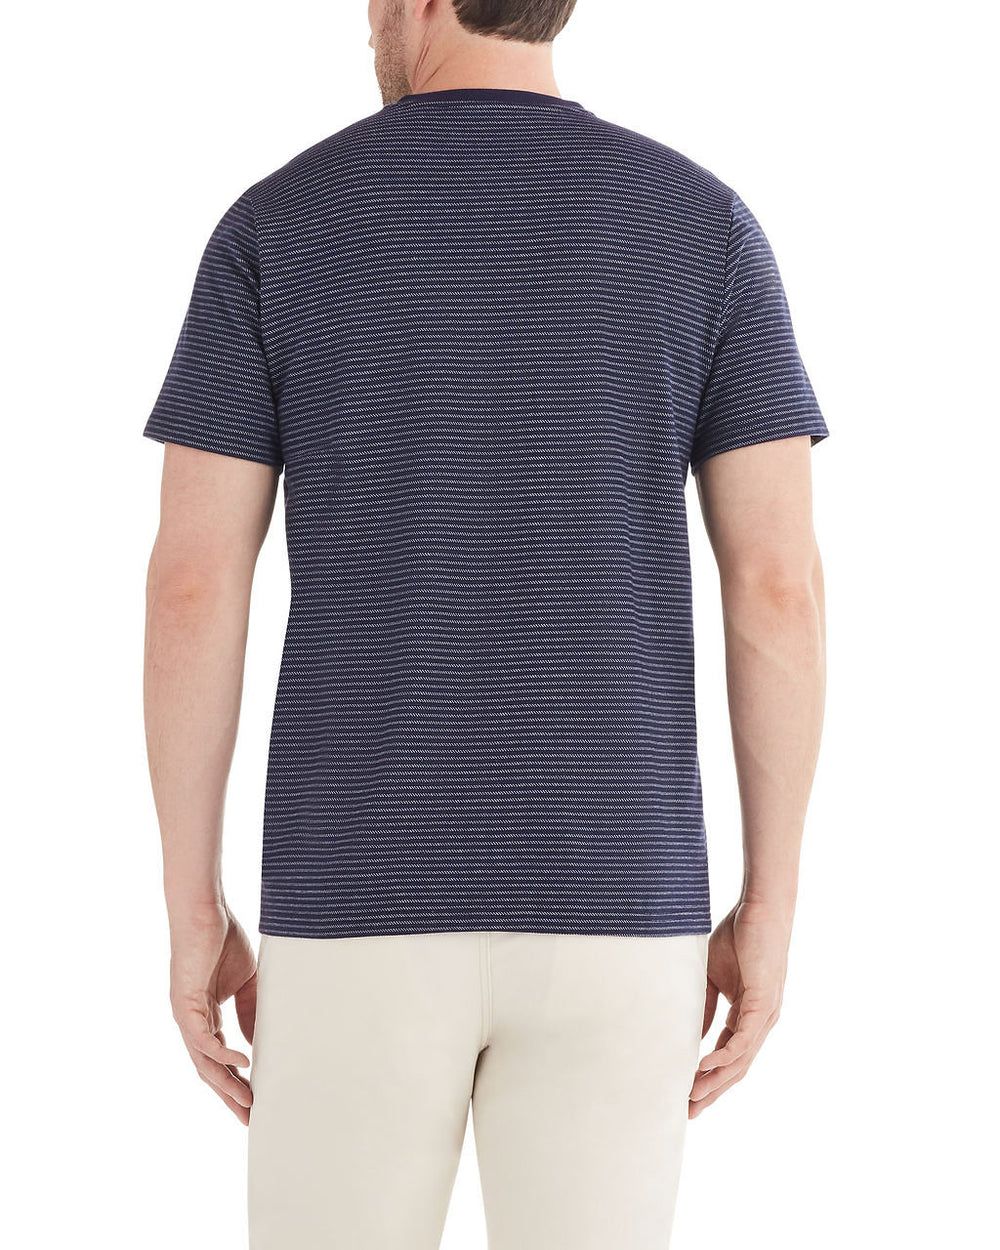 Birdseye Stripe Henley T-Shirt - Navy